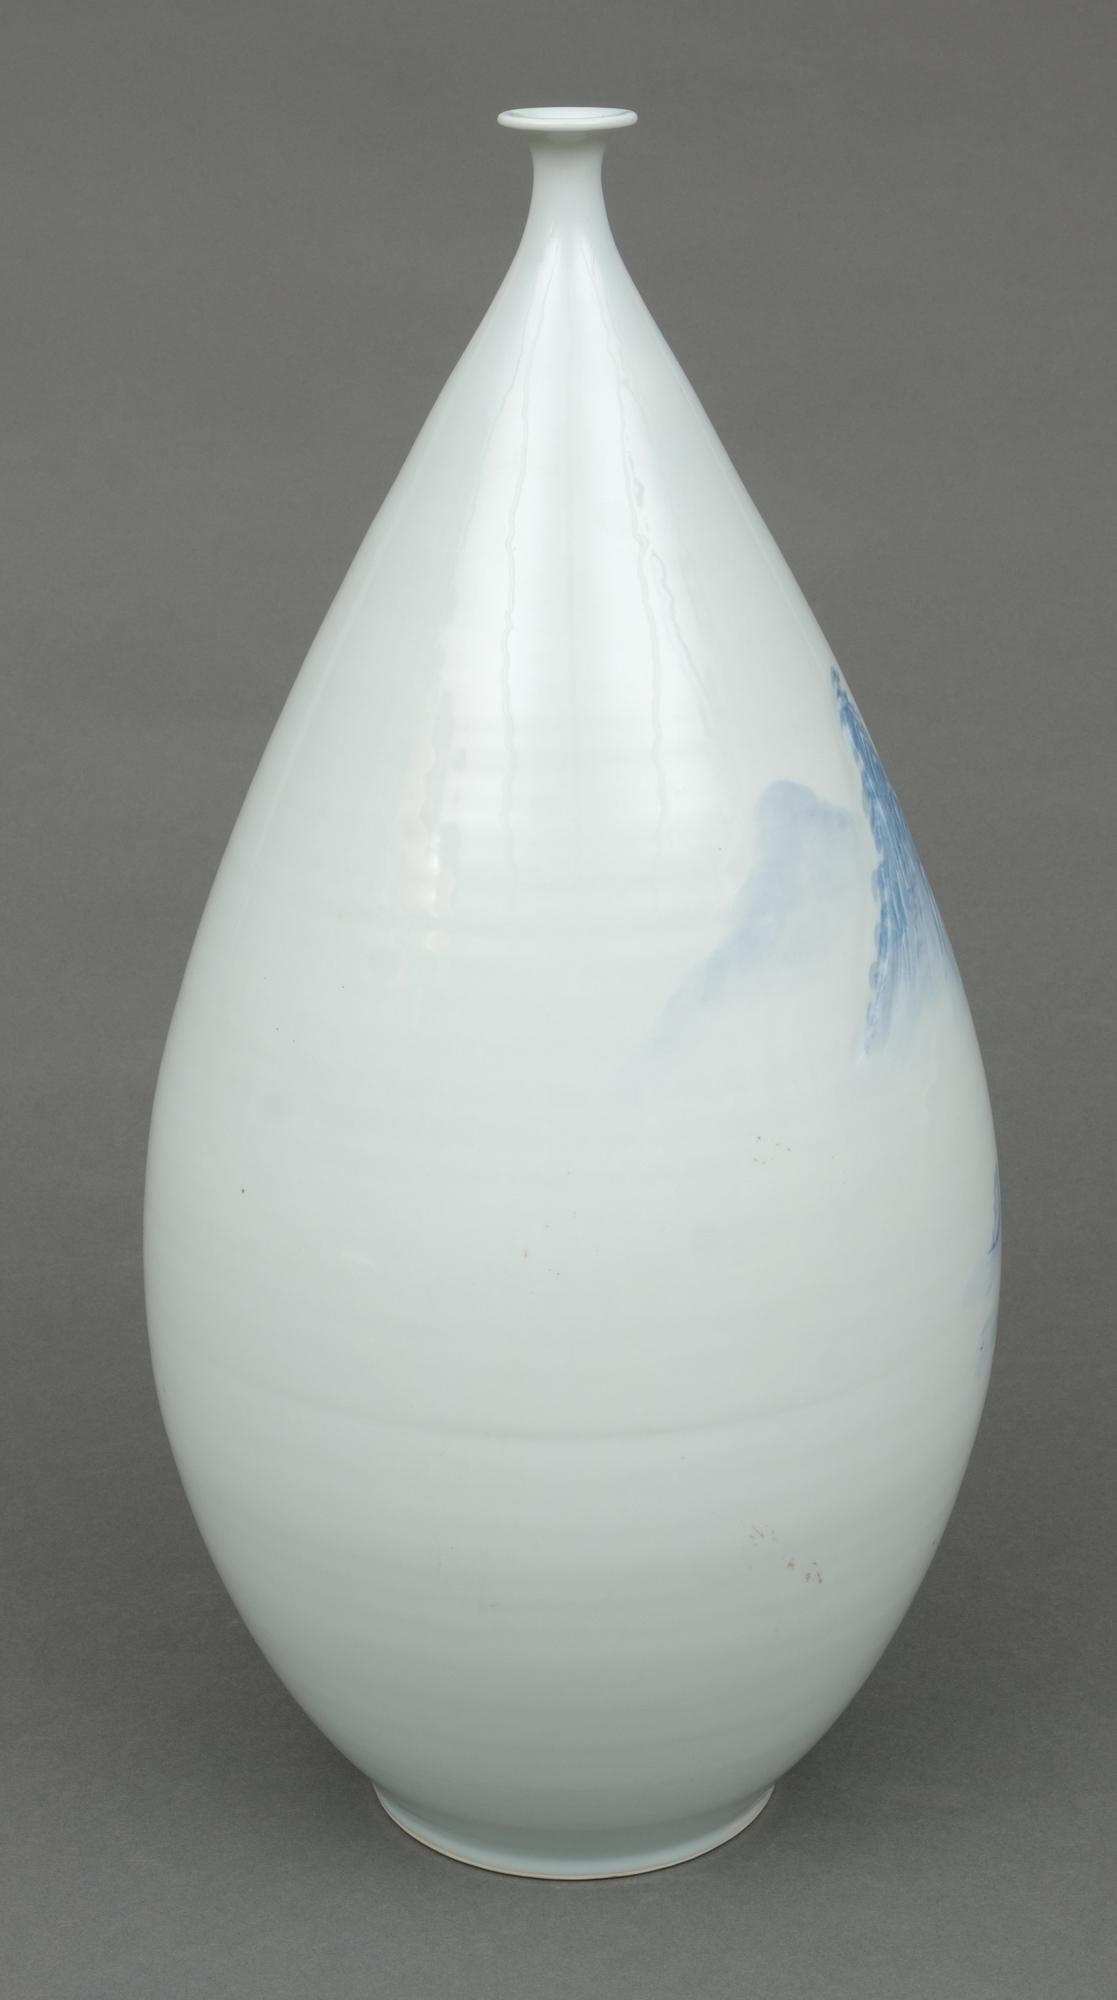 Grand vase ovoïde japonais en porcelaine avec paysage bleu et blanc, par Shigan 芝岩 1